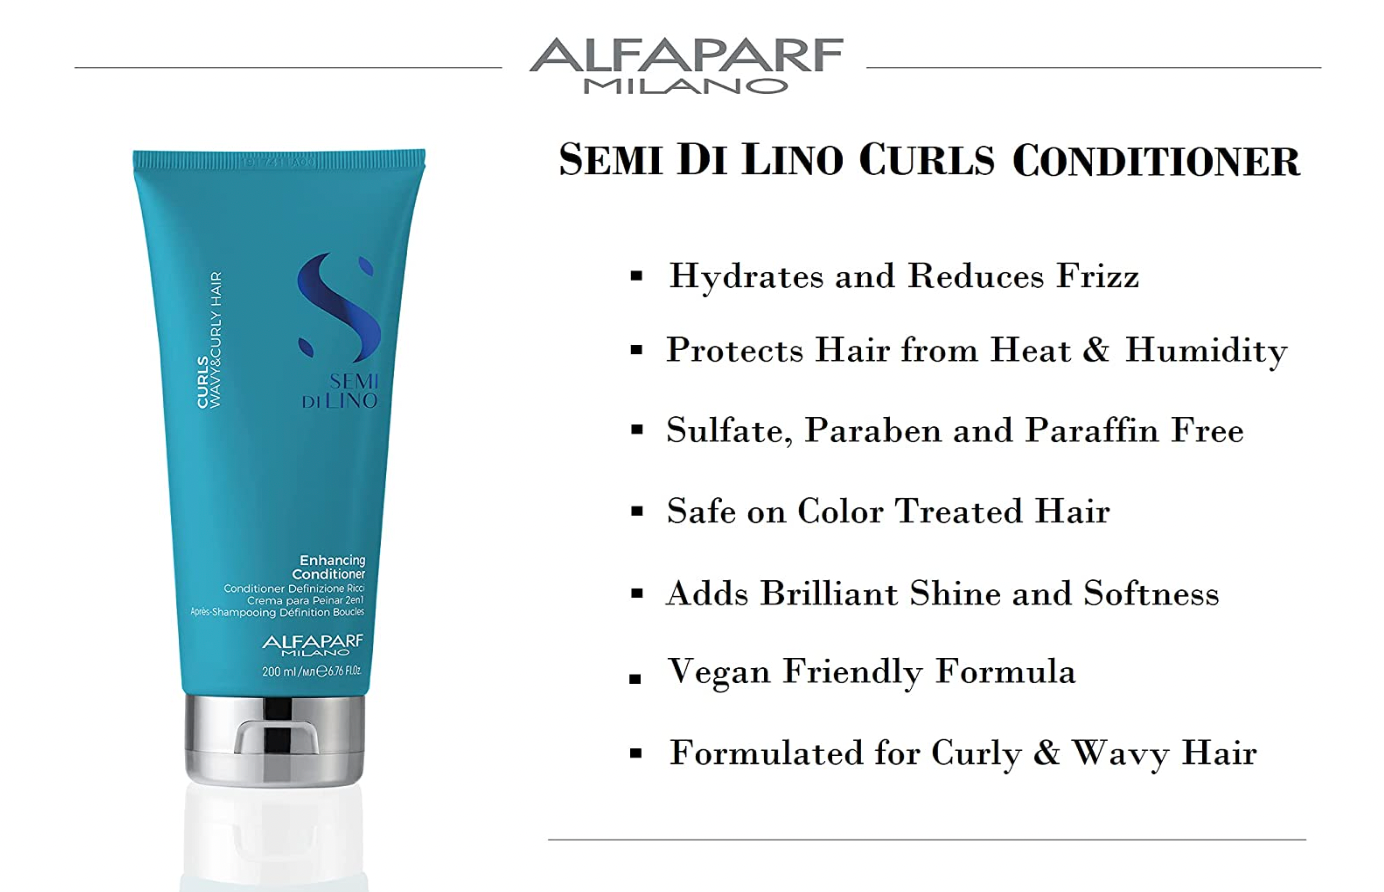 ALFAPARF MILANO SEMI DI LINO Enhancing Conditioner Curls Wavy & Curly Hair 200ml